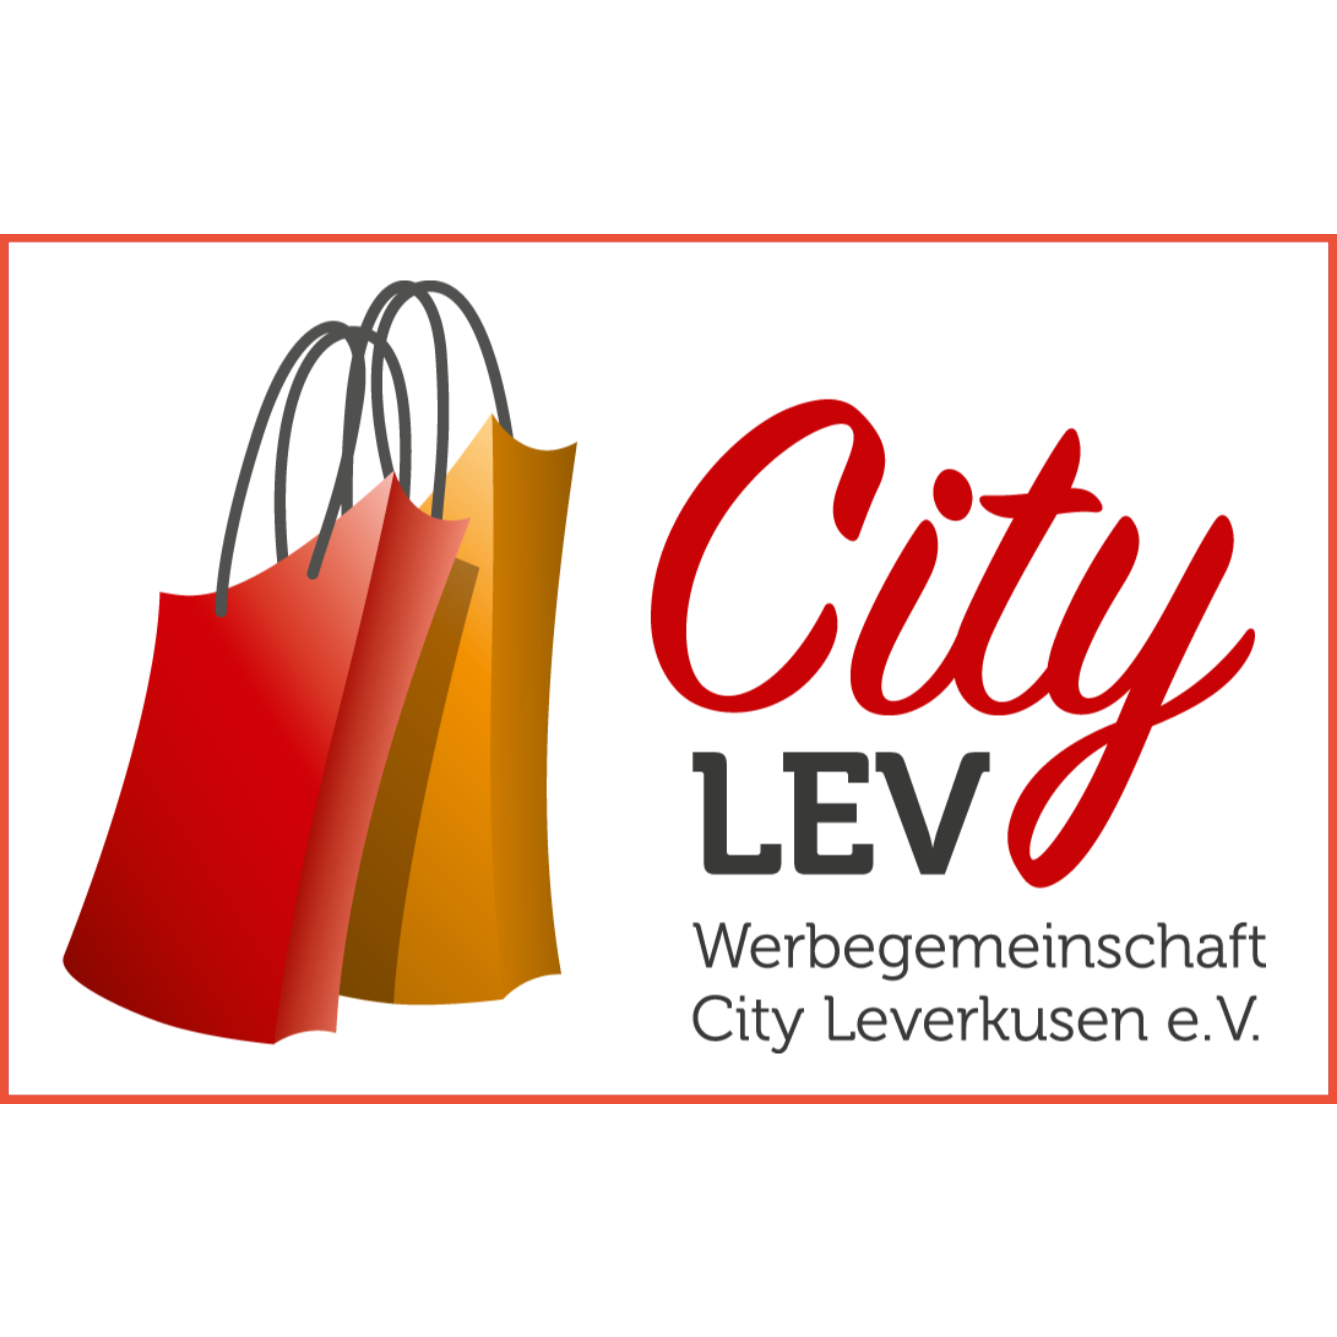 Werbegemeinschaft City Leverkusen